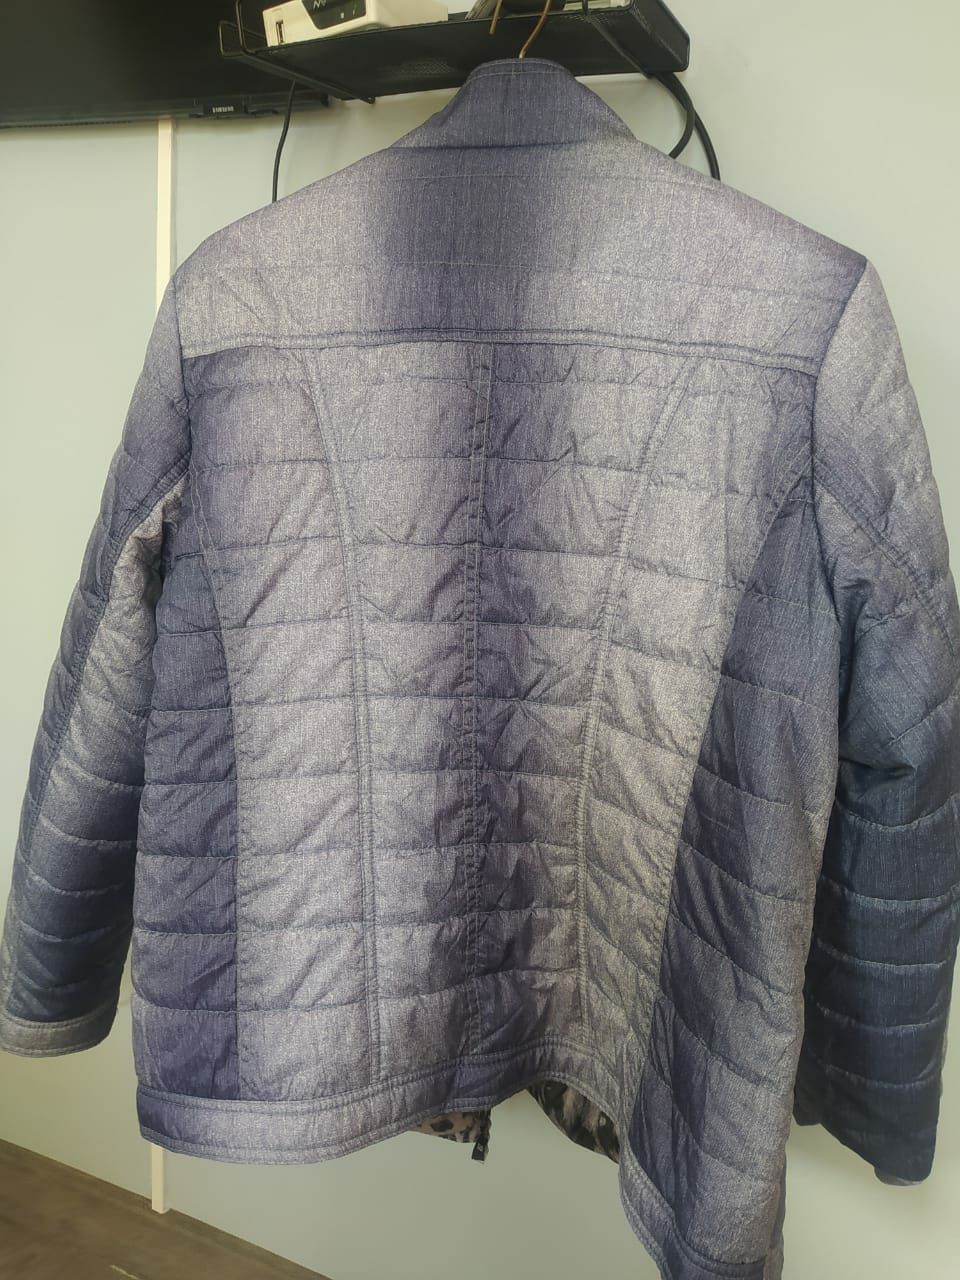 Продам куртки 52-54 размеры,одна удлиненная,новая,вторая двухсторонняя